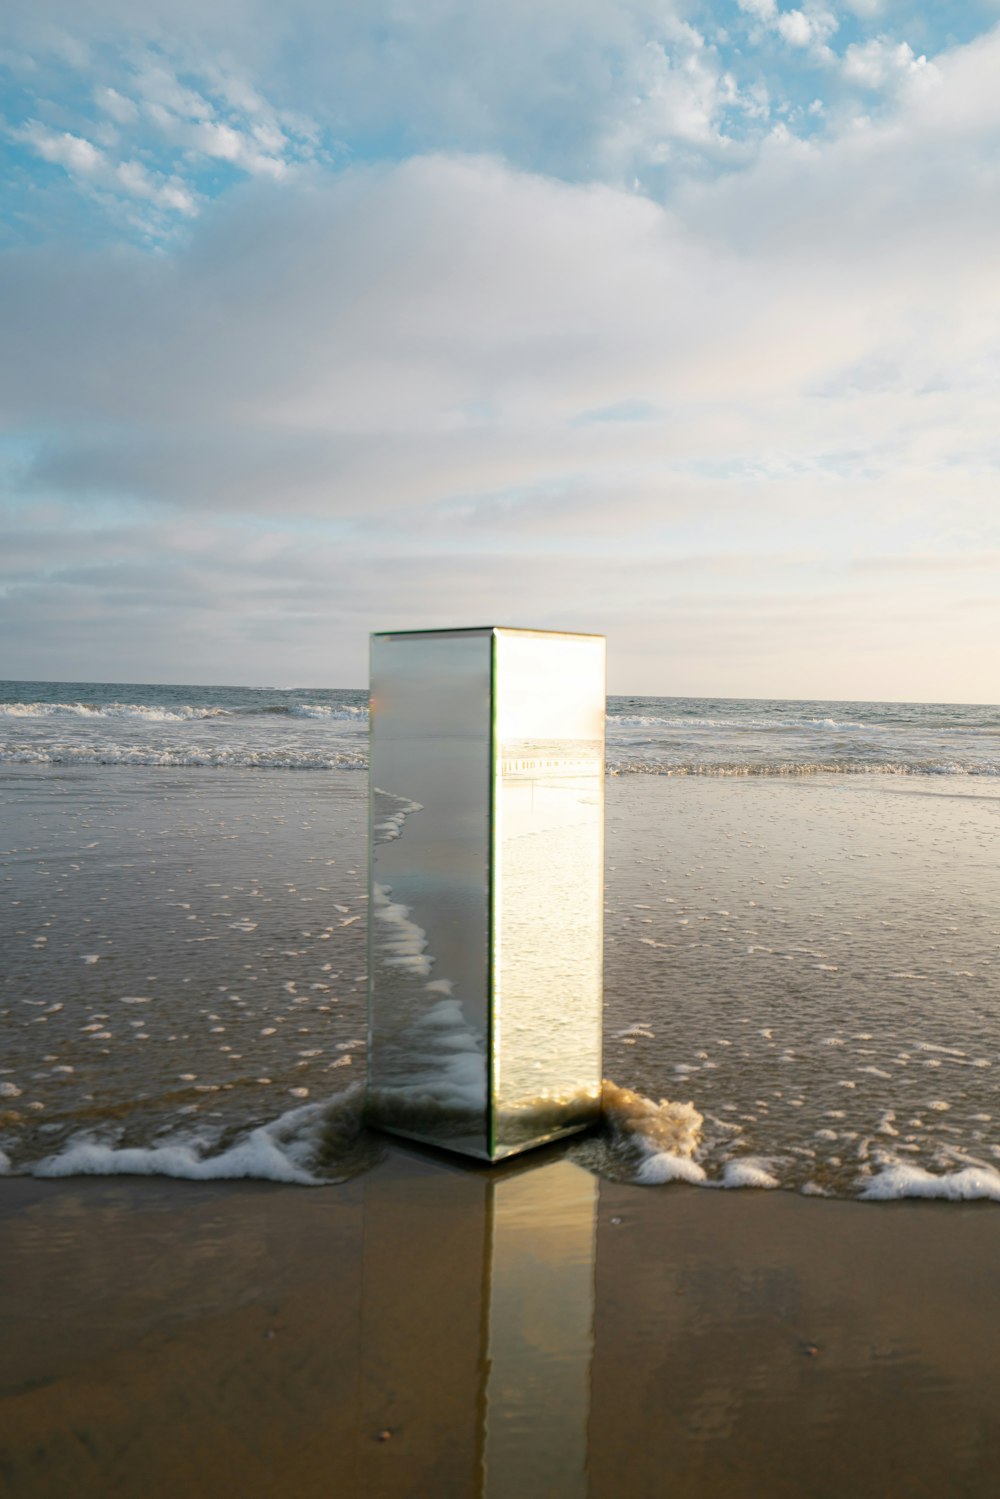 Un cubo de cristal sentado encima de una playa de arena